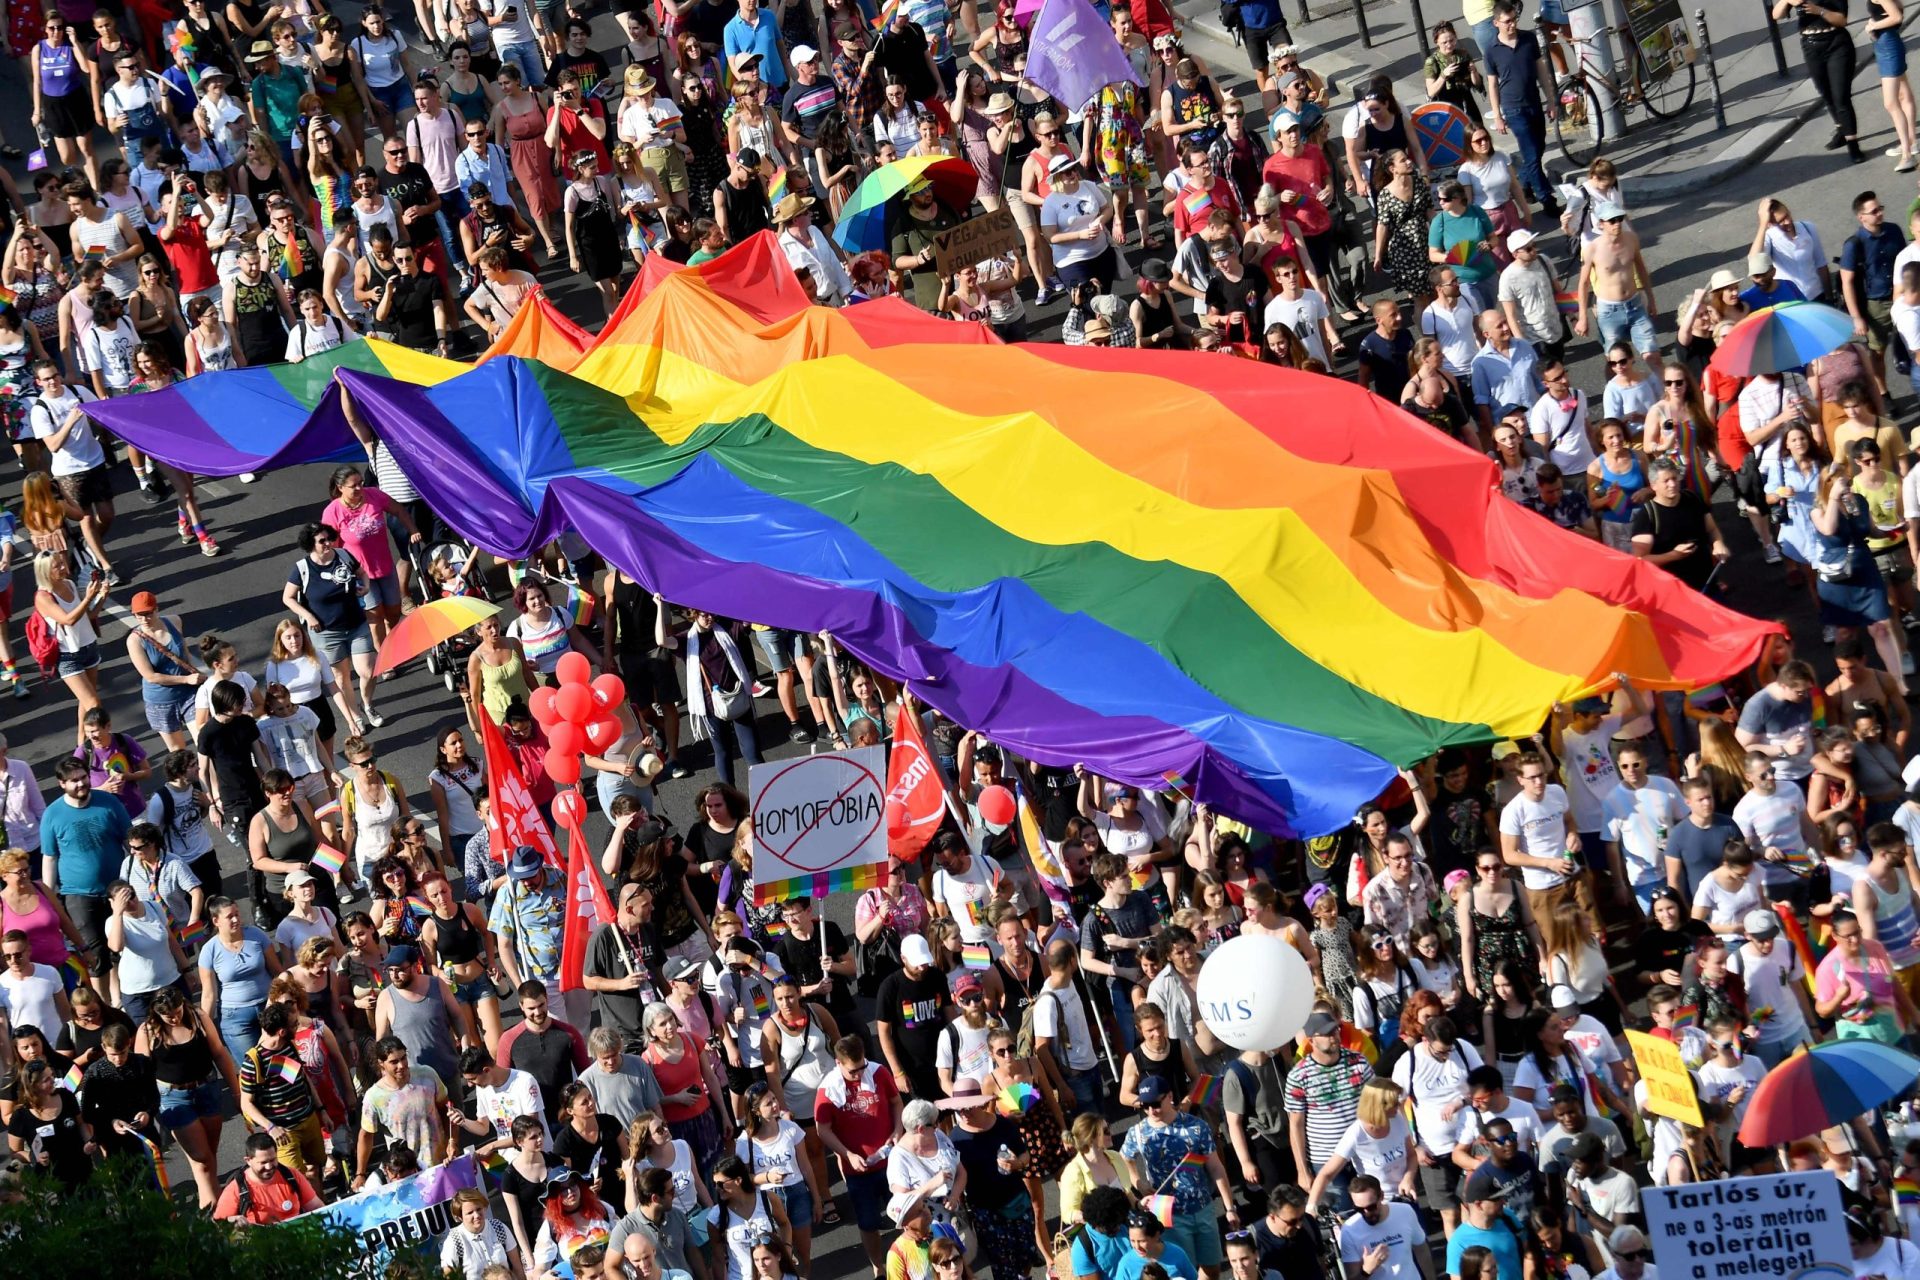 Comissão Europeia abre processos de infração contra a Hungria e Polónia por violação dos direitos LGBTIQ